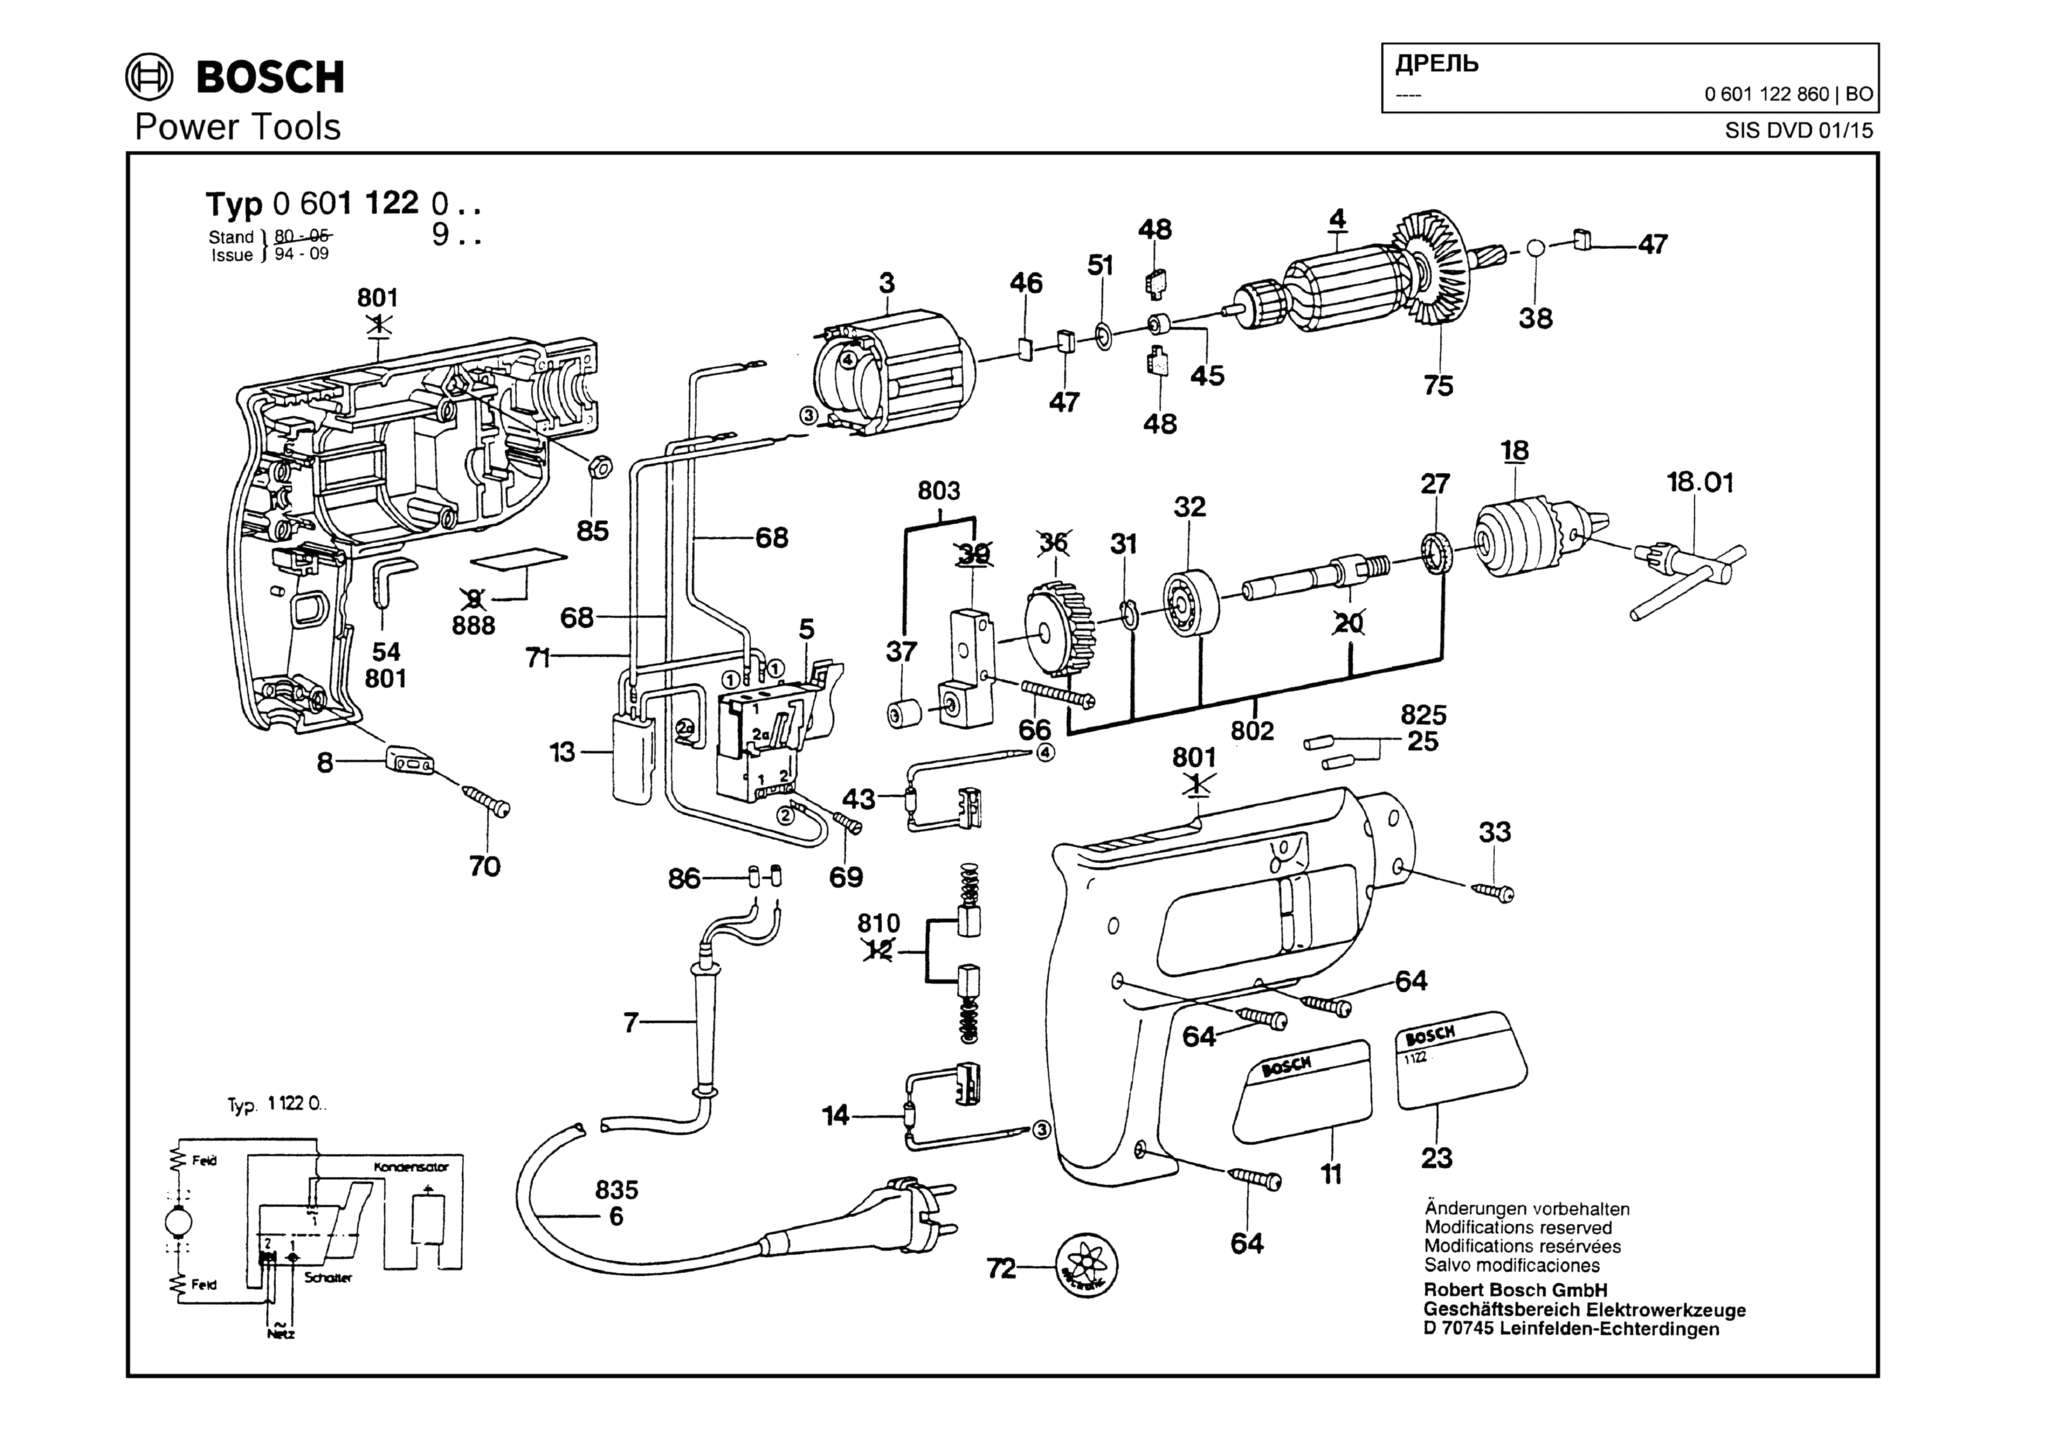 Запчасти, схема и деталировка Bosch (ТИП 0601122860)